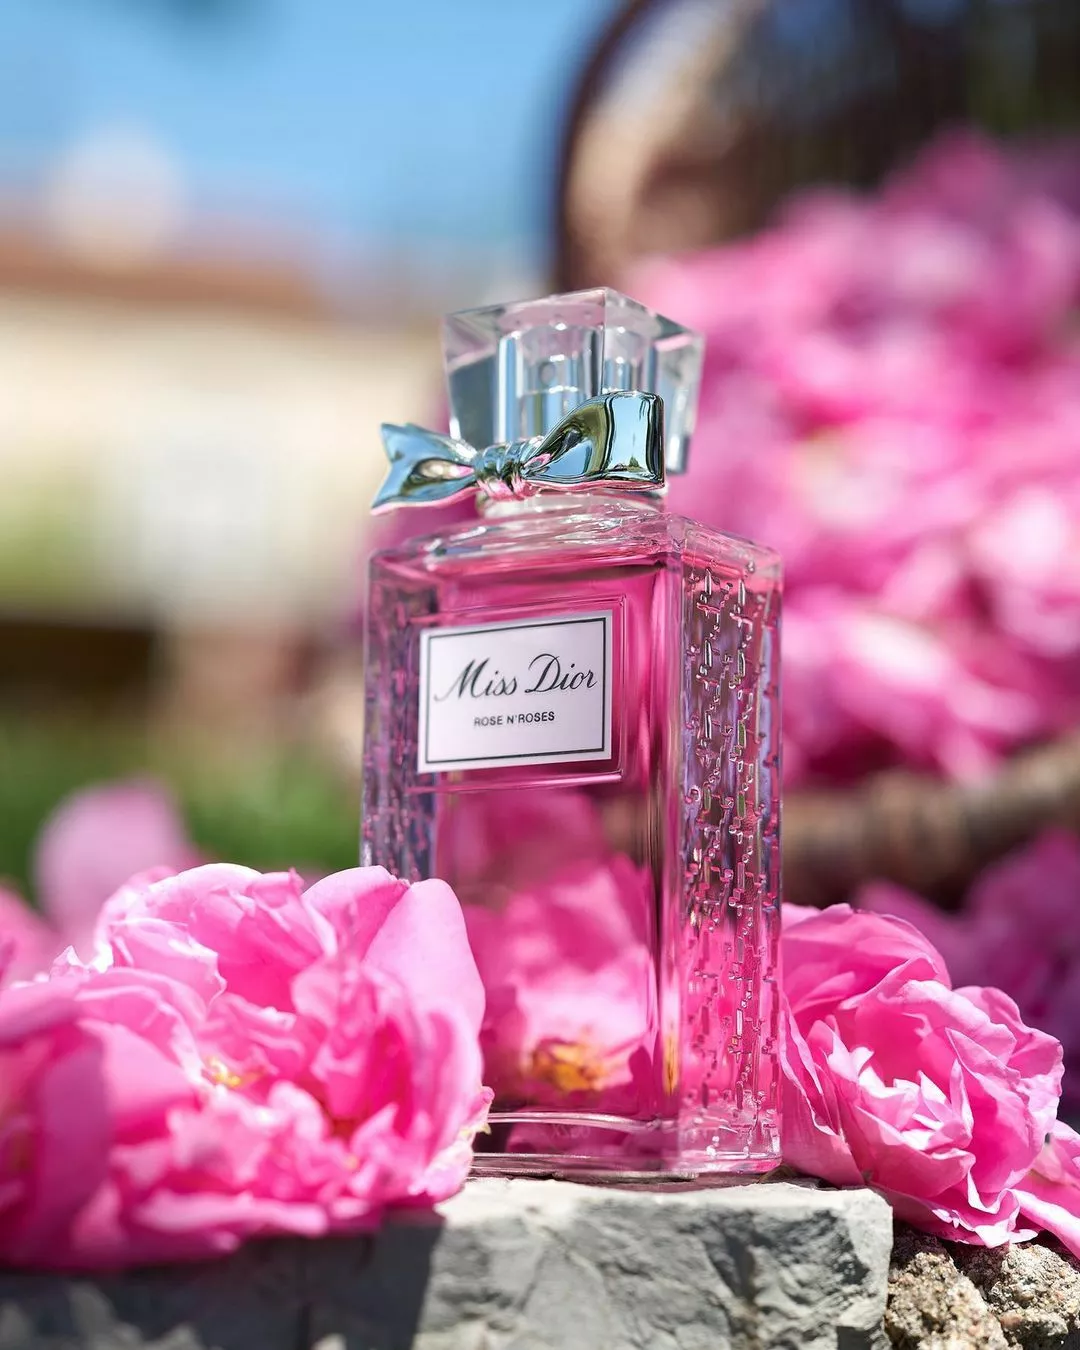 Реклама парфюма Miss Dior Rose N’Roses